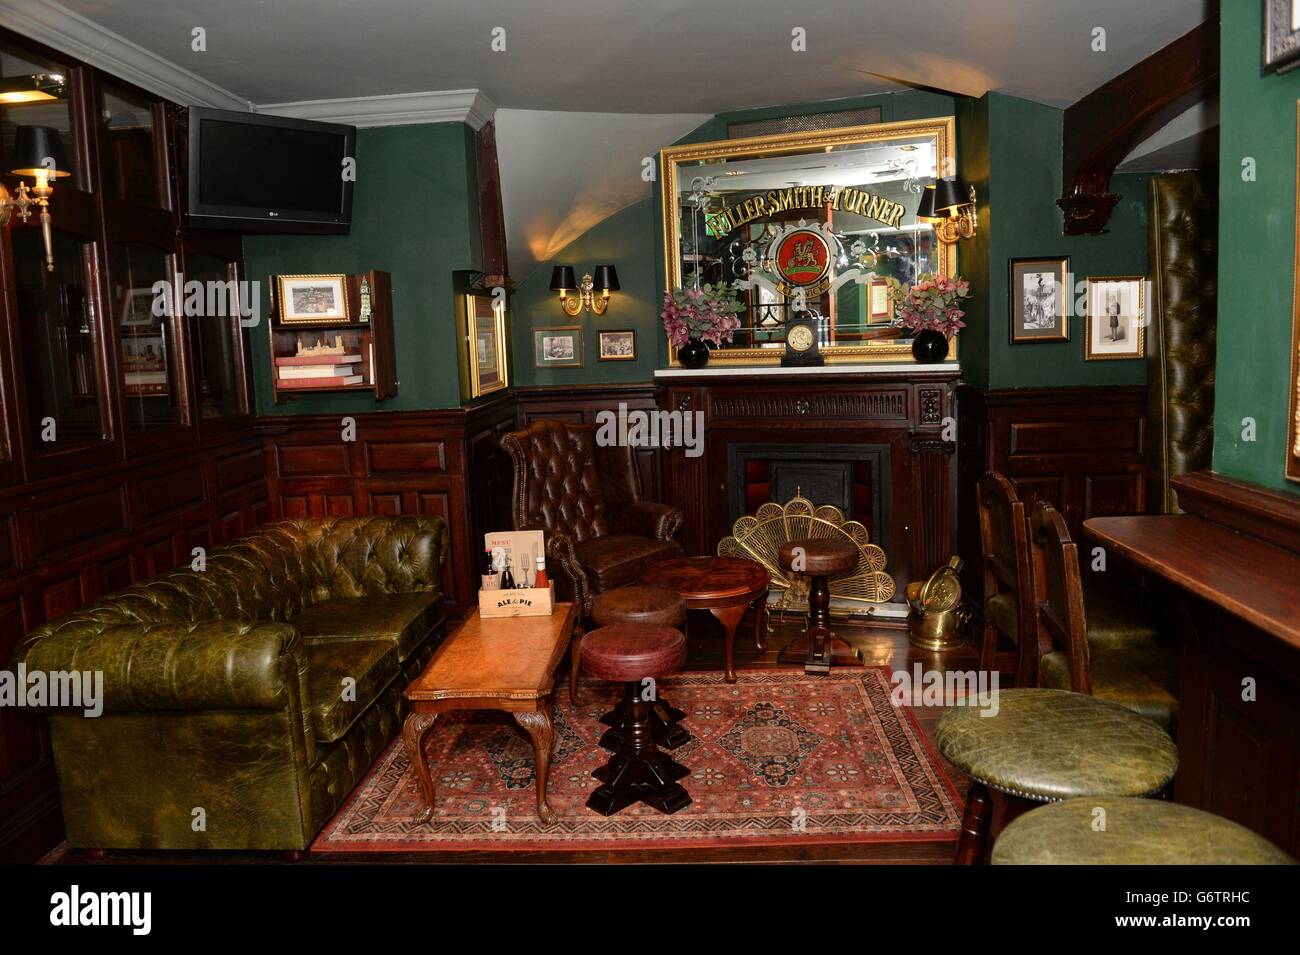 Blick auf das Innere des Red Lion Pubs in Whitehall, London, das heute vom Schatzkanzler George Osborne nach der Renovierung wieder eröffnet werden soll. Stockfoto